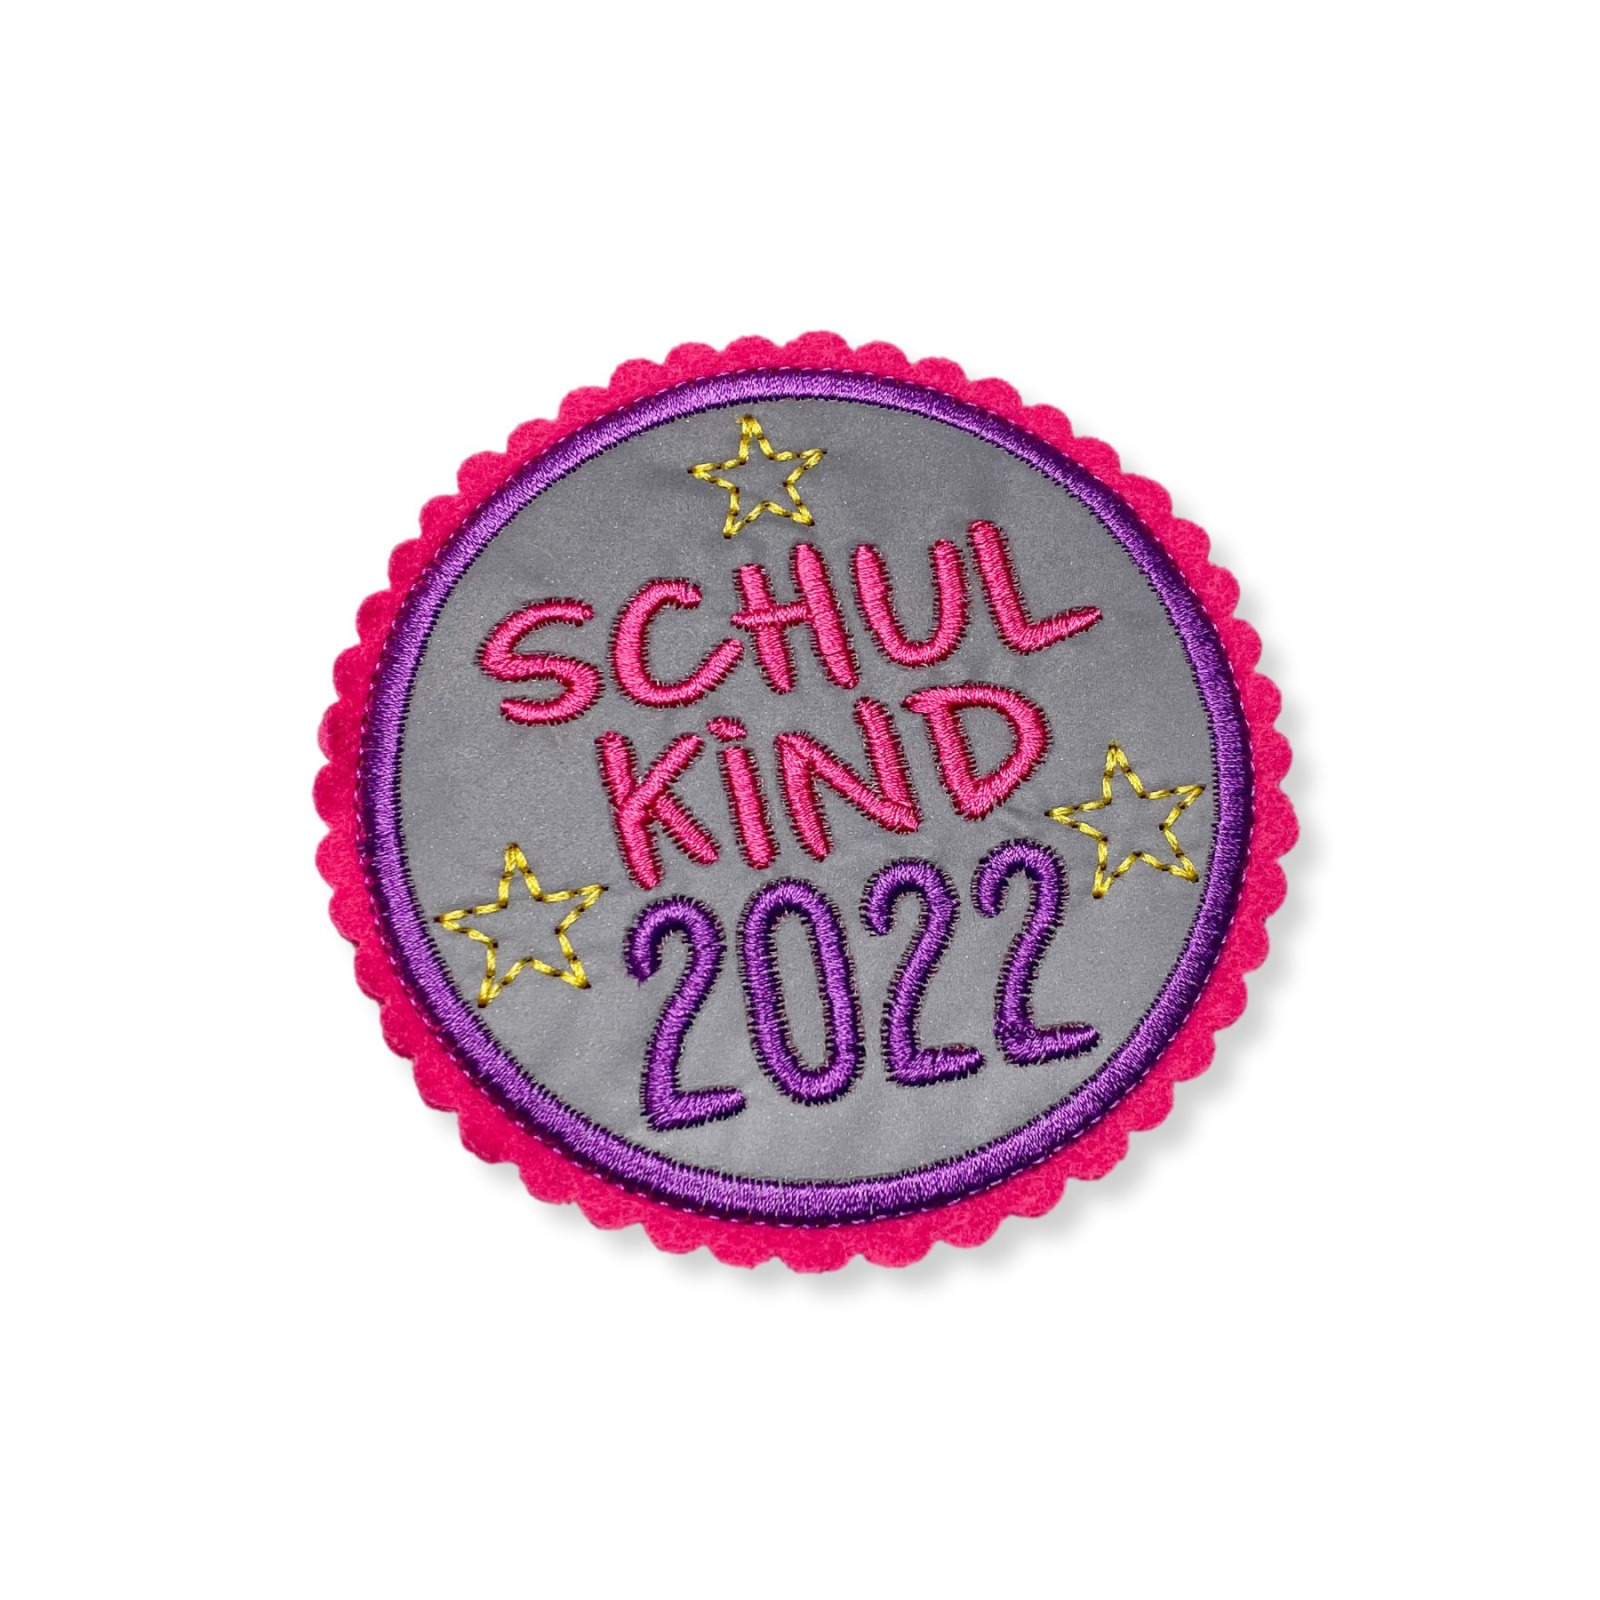 Kletti Schulkind 2022 10cm Durchmesser Reflektorstoff pink lila Einschulung für den Schulranzen 4